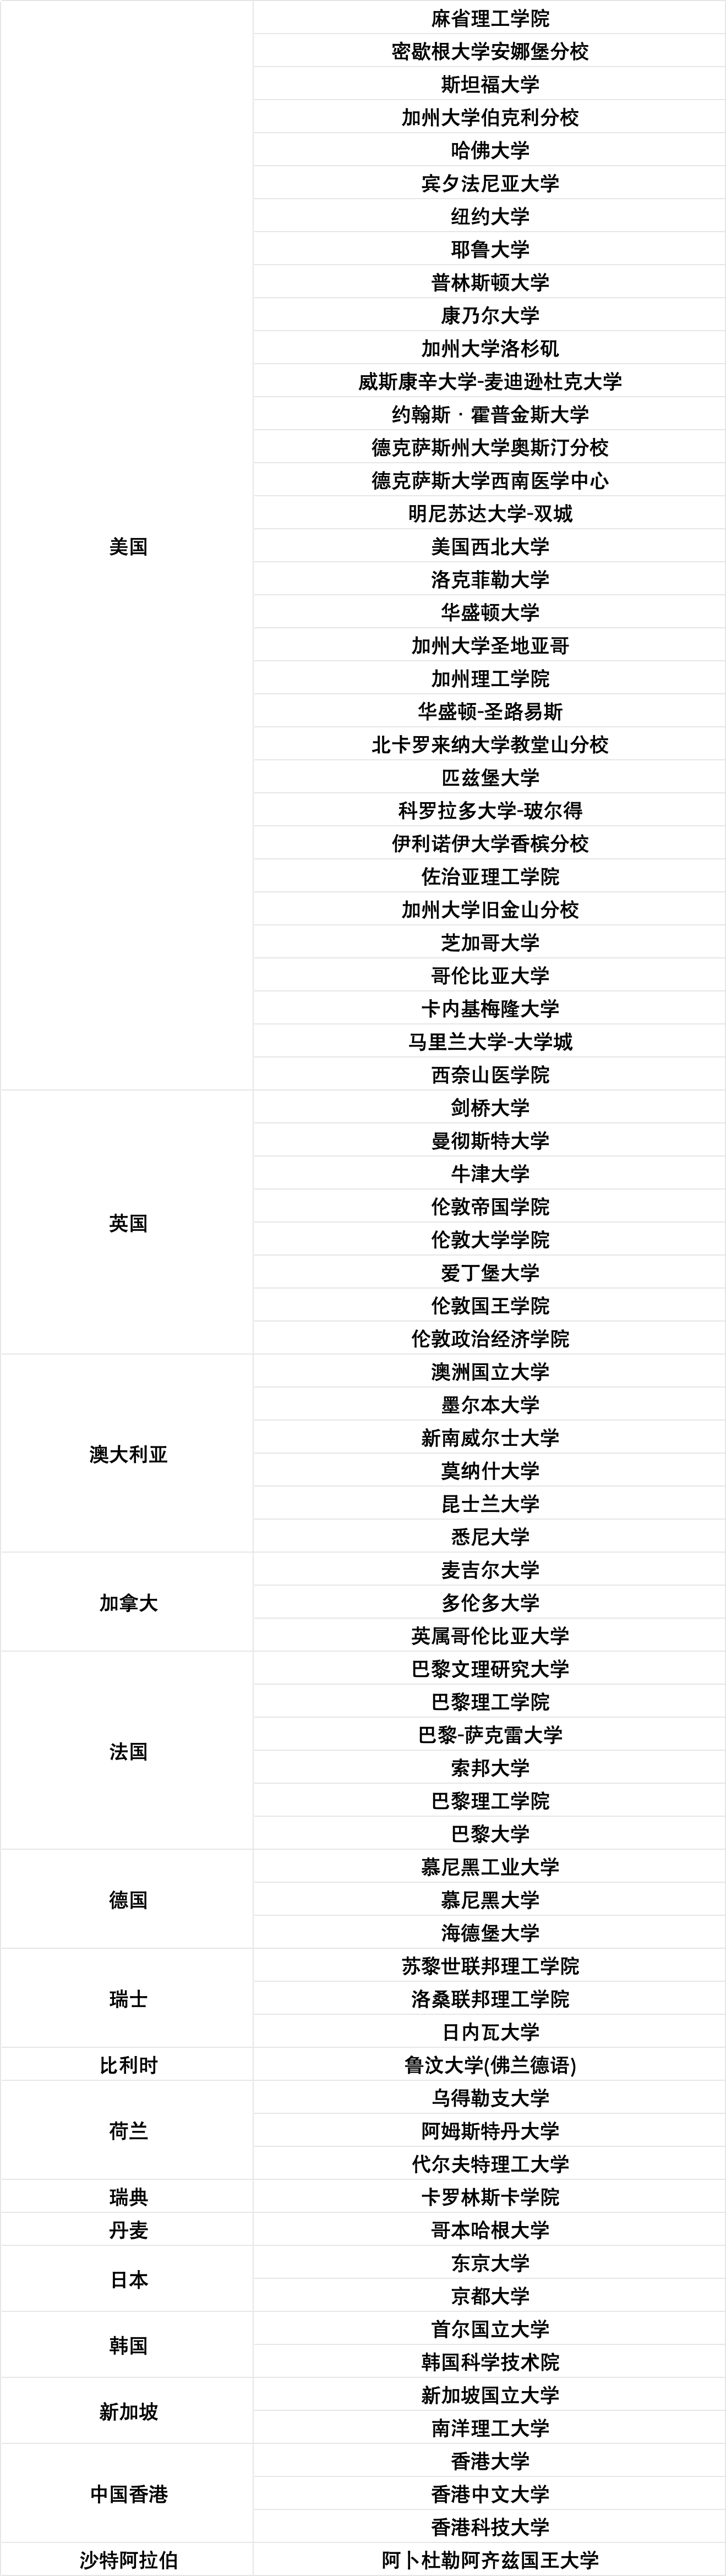 留学红利来啦~！上海留学生落户院校TOP前百名单更新！